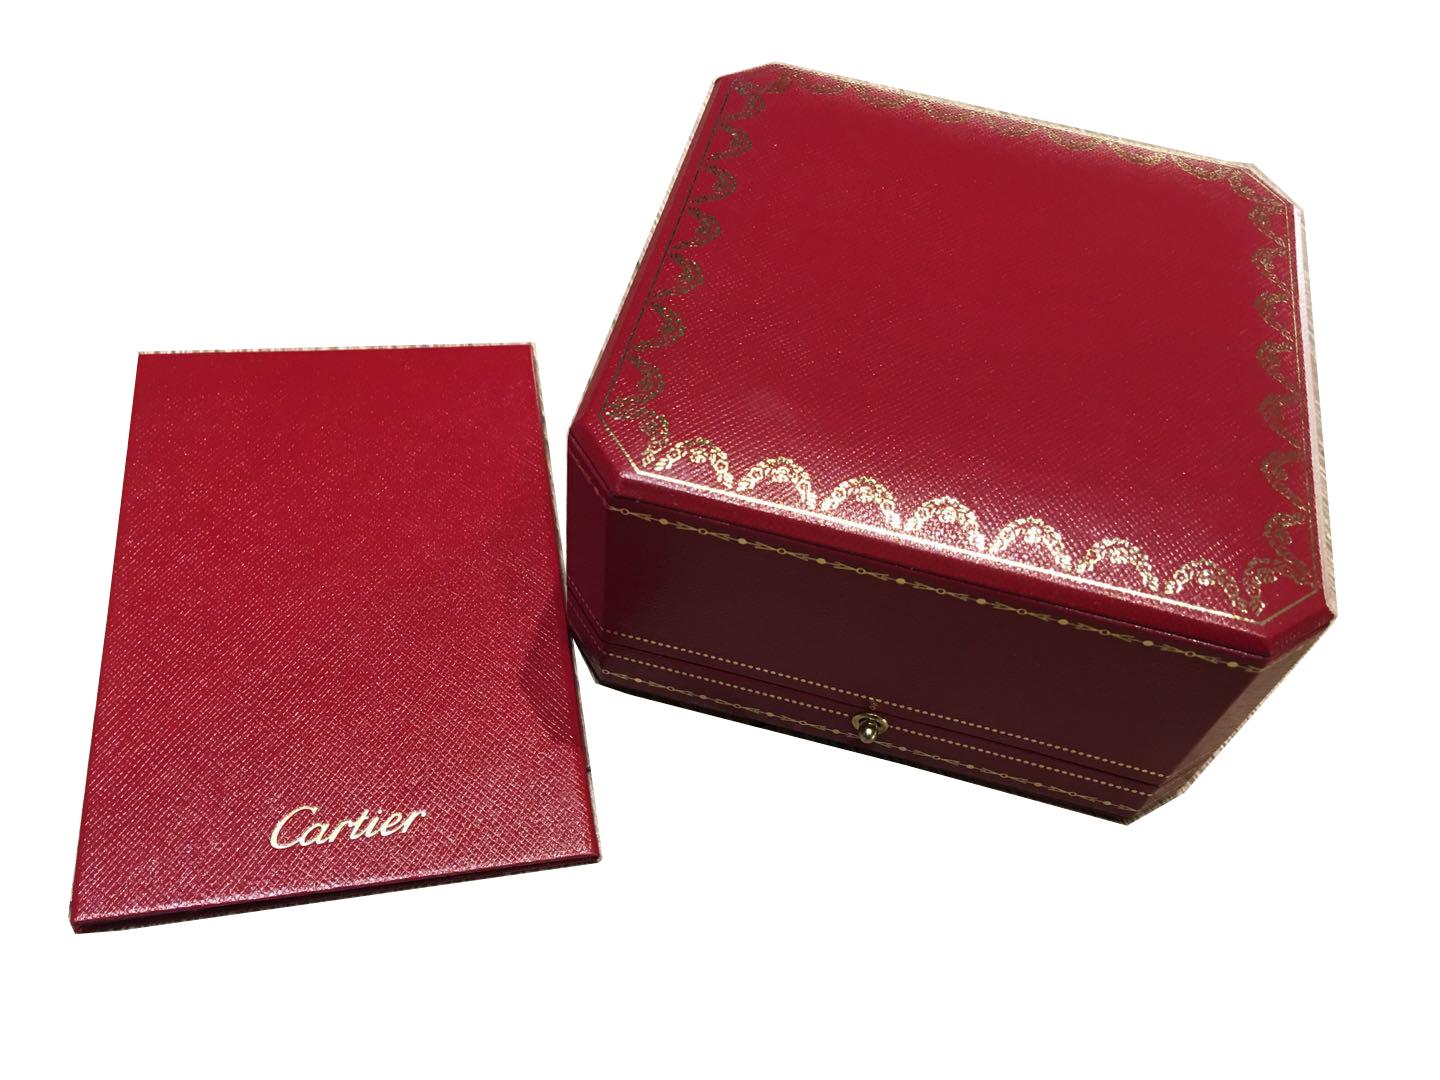 Cartier Panthère de Bracelet, Gold, Lacquer, Diamond, Tsavorite Garnets, Onyx For Sale 7